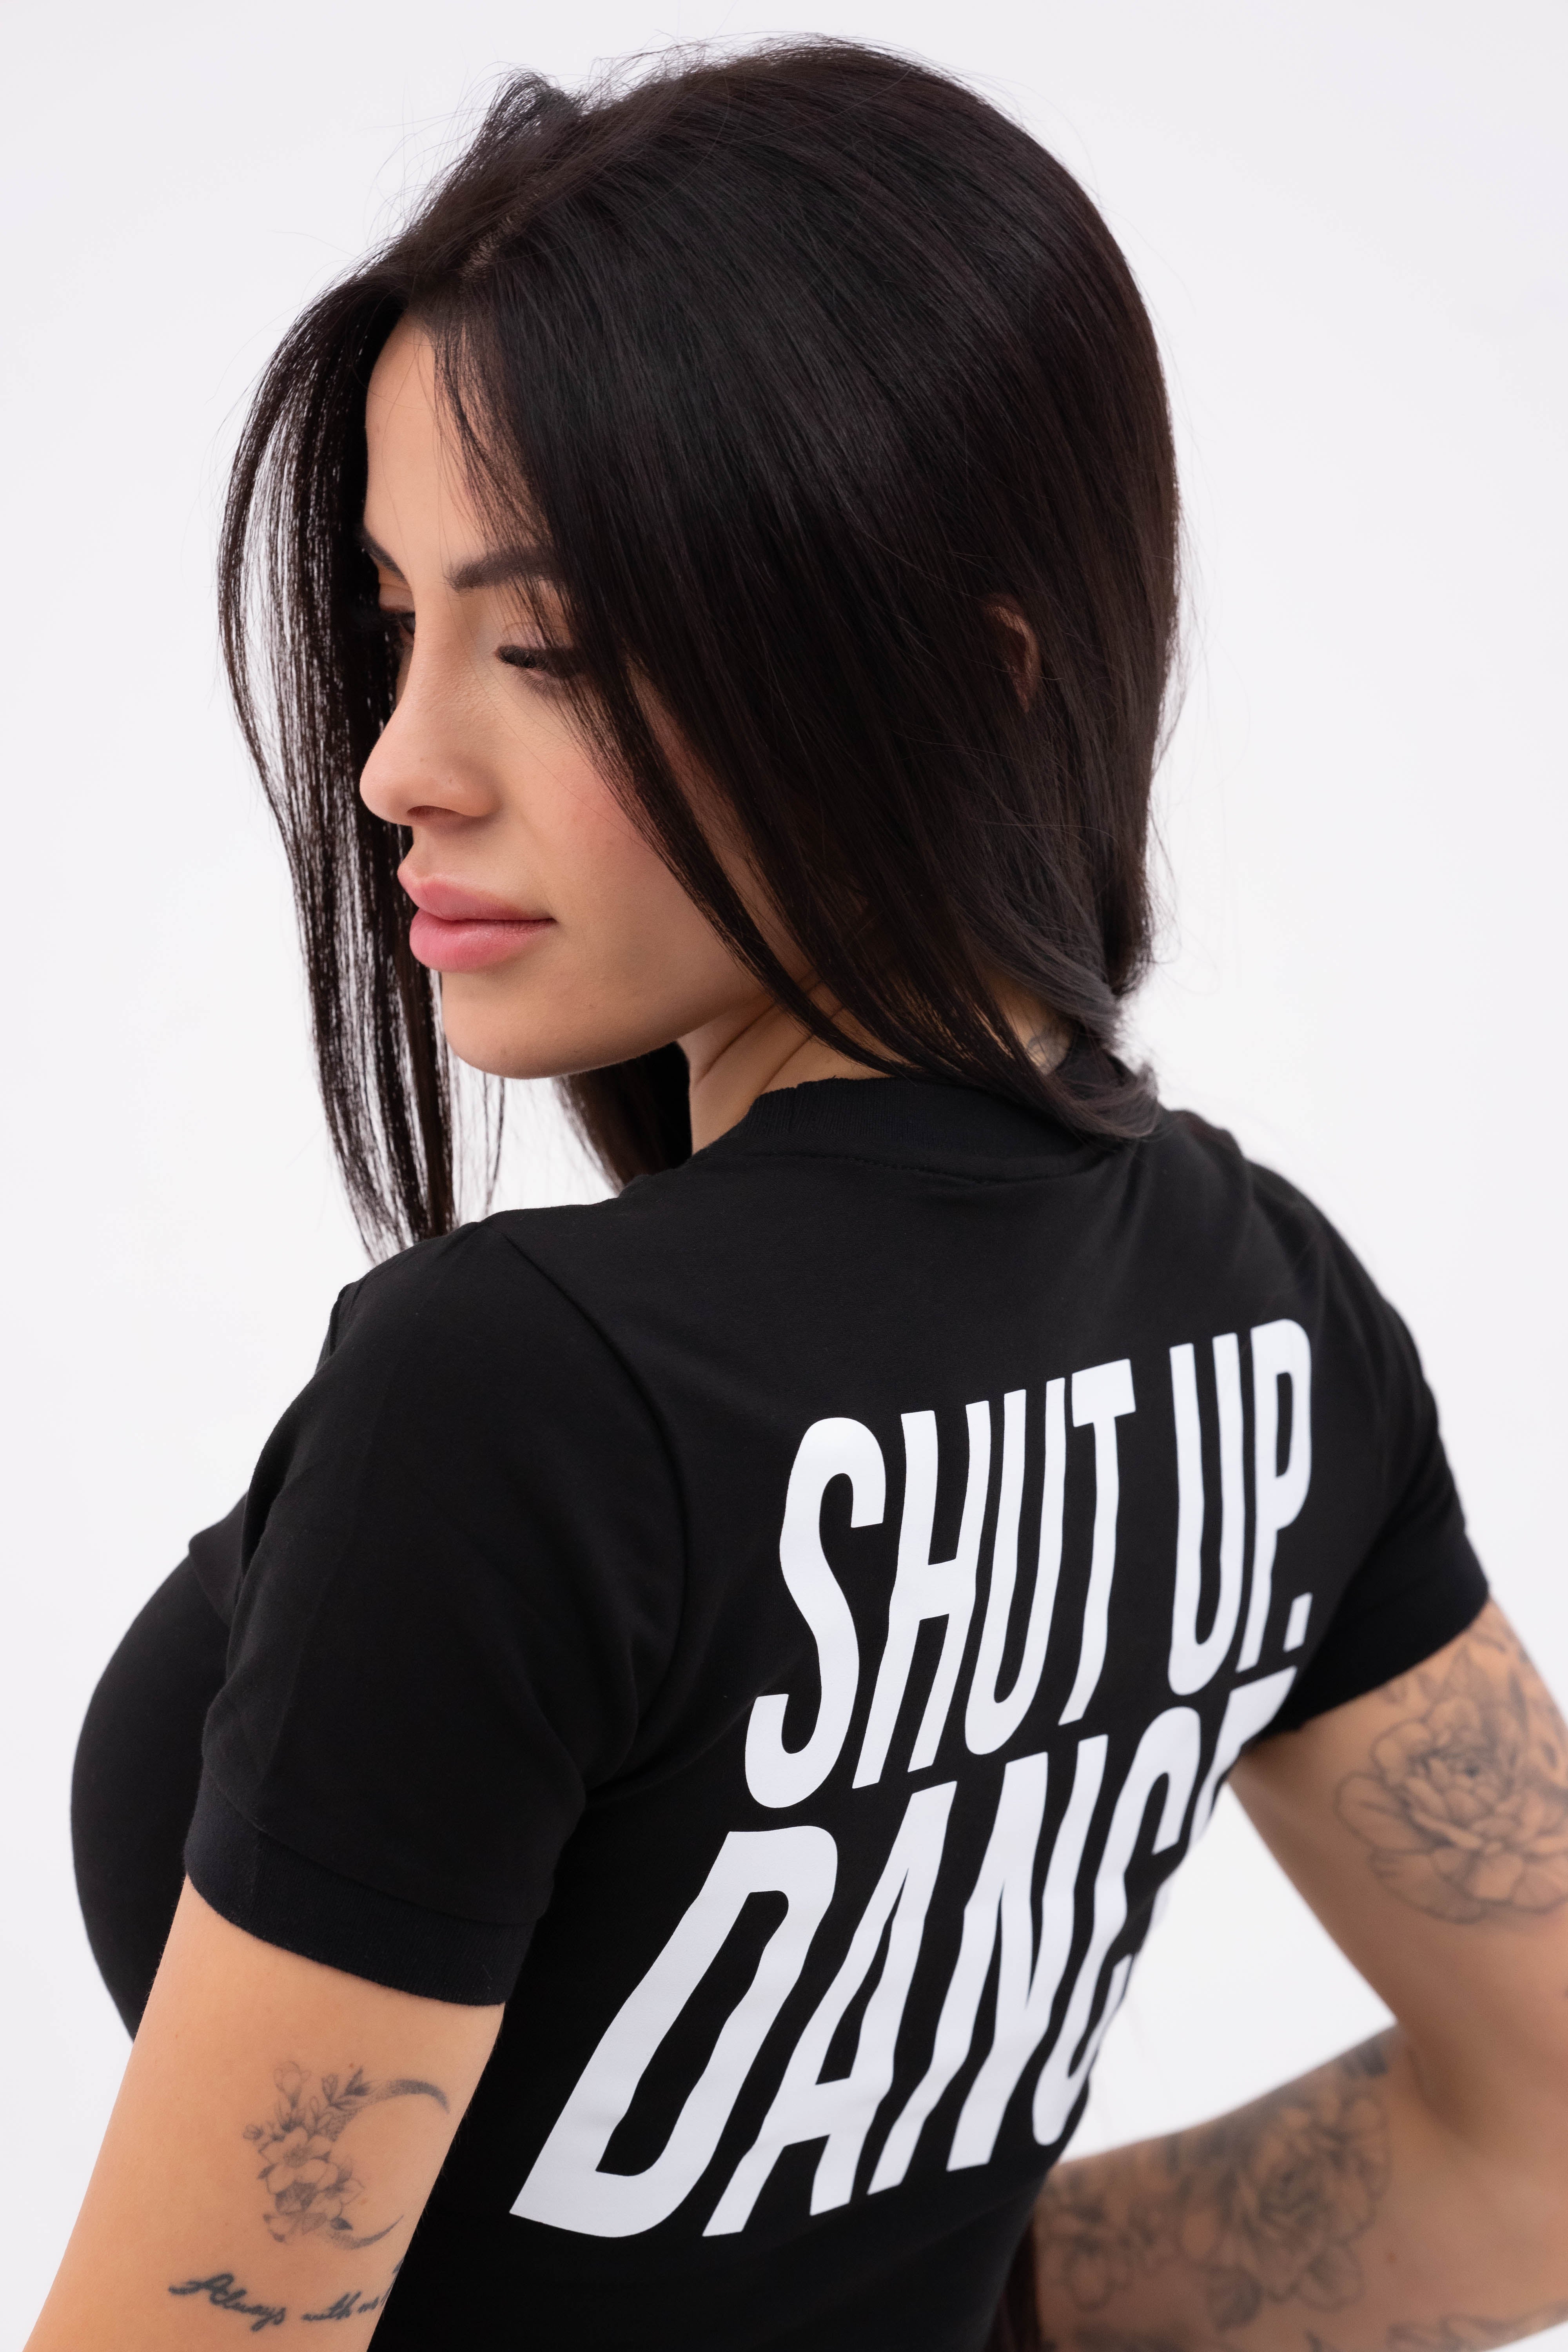 Shut Up Dance Ermes Dance Women's T-shirt